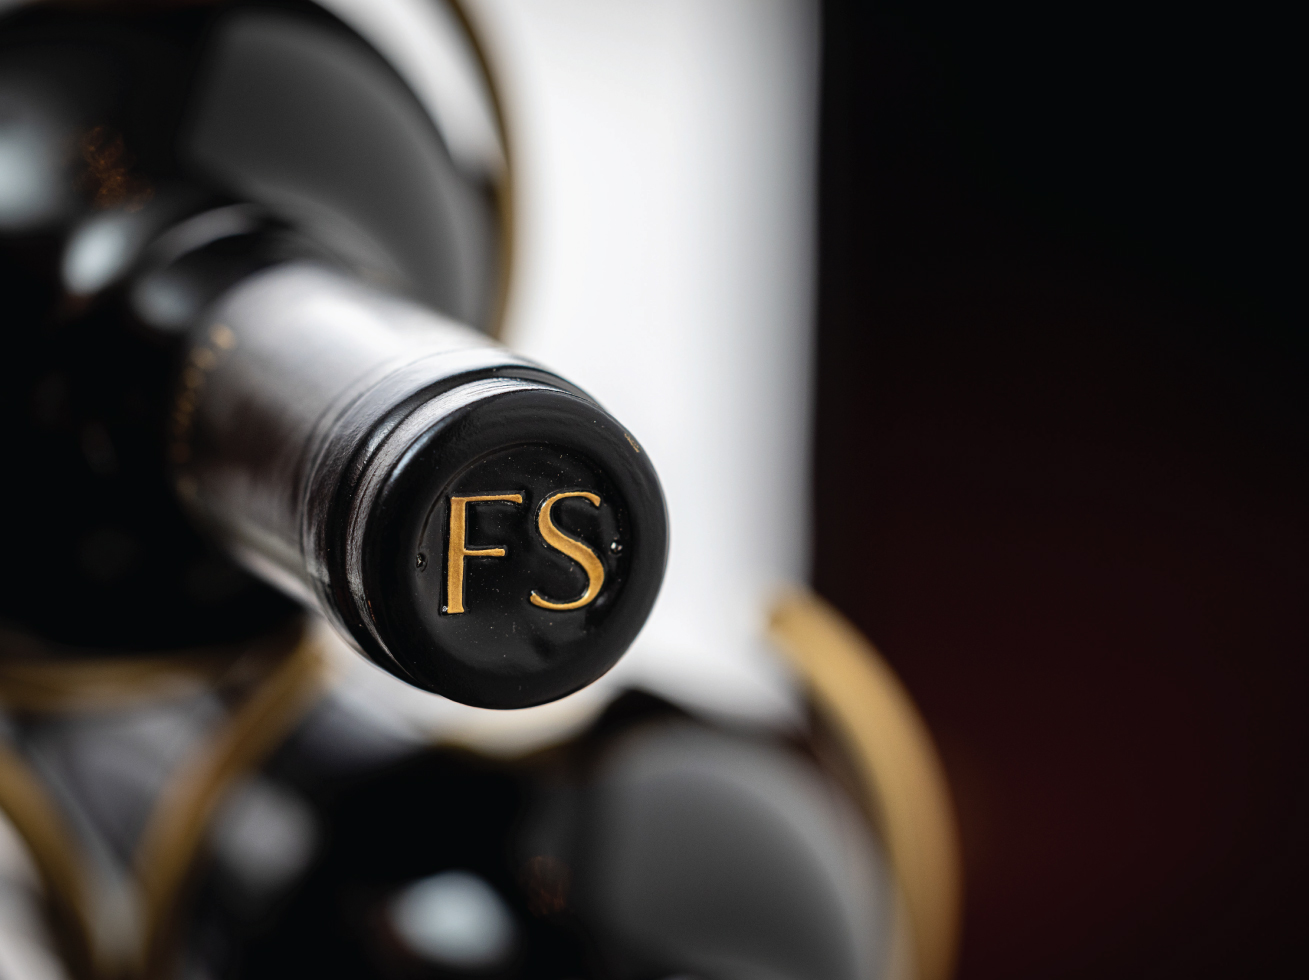 FS logo on wine bottle cap.